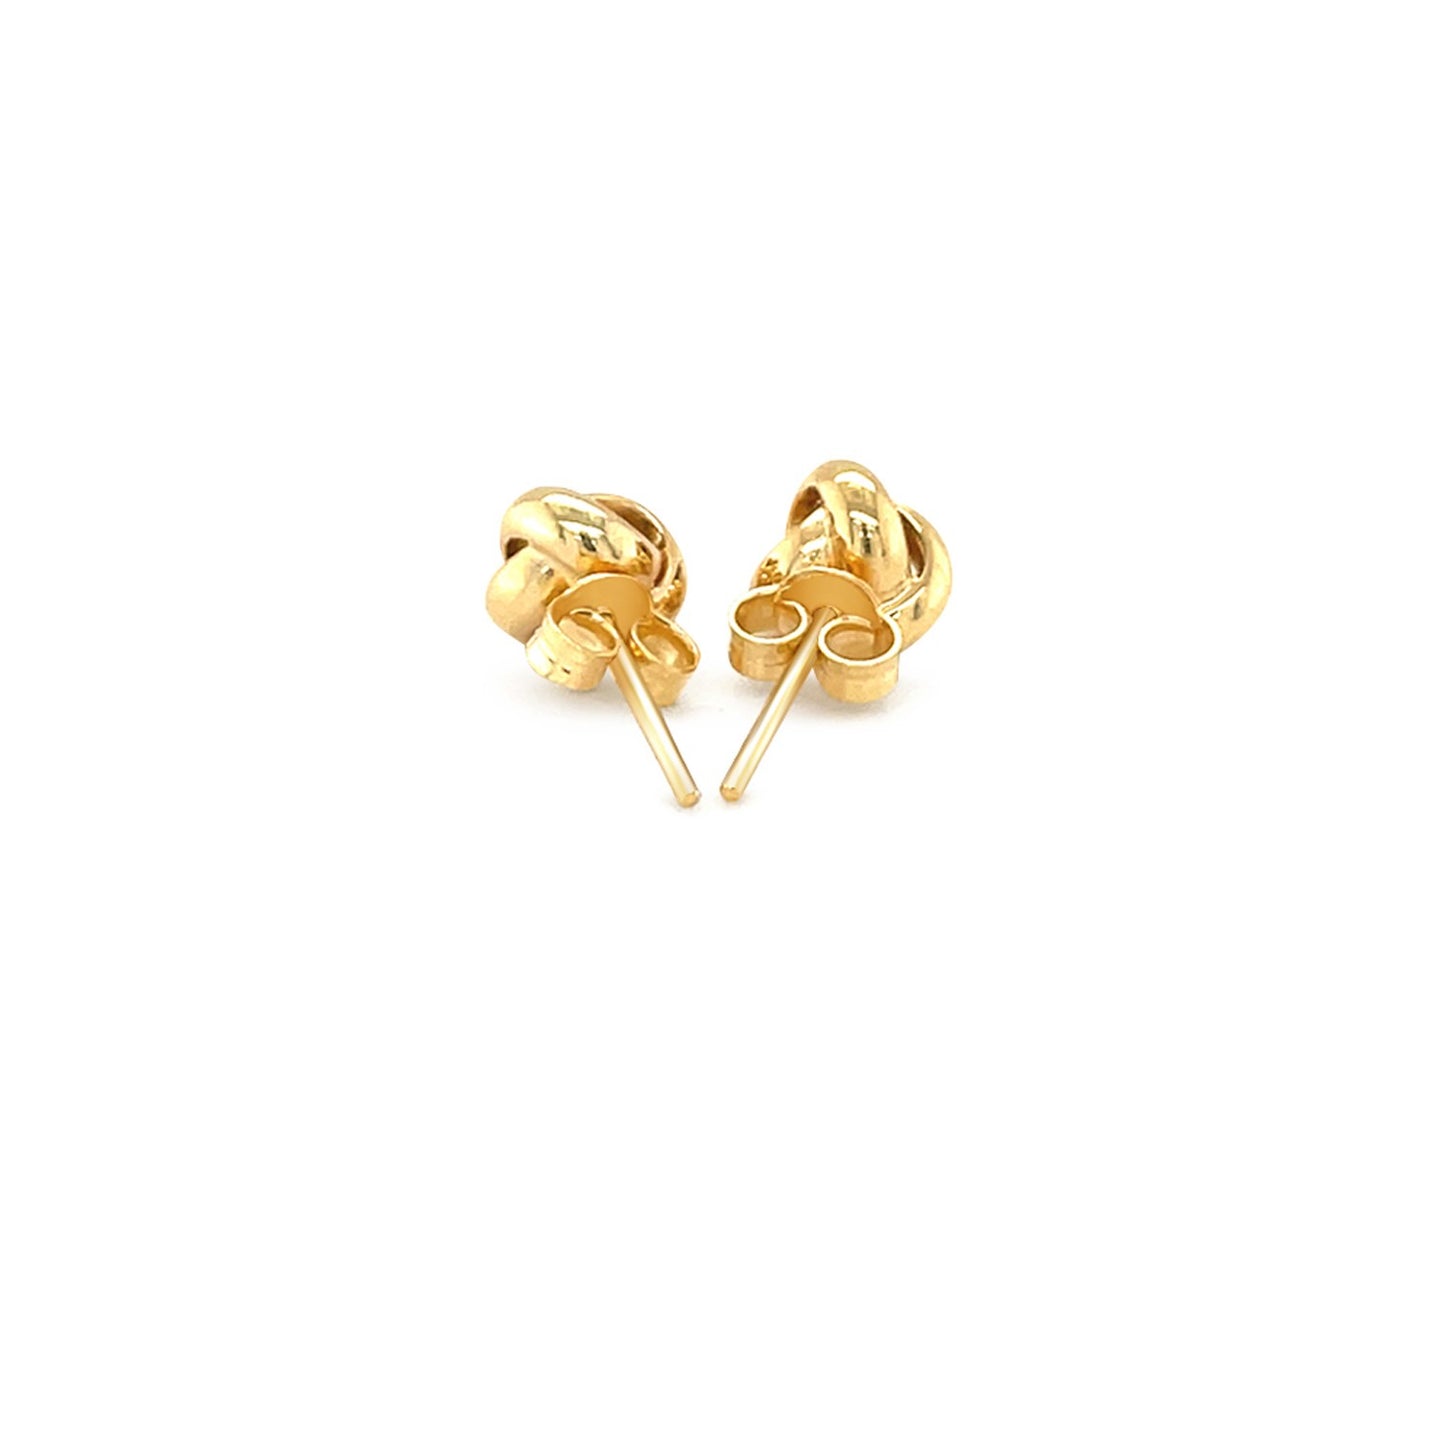 10k Yellow Gold Love Knot Stud Earrings